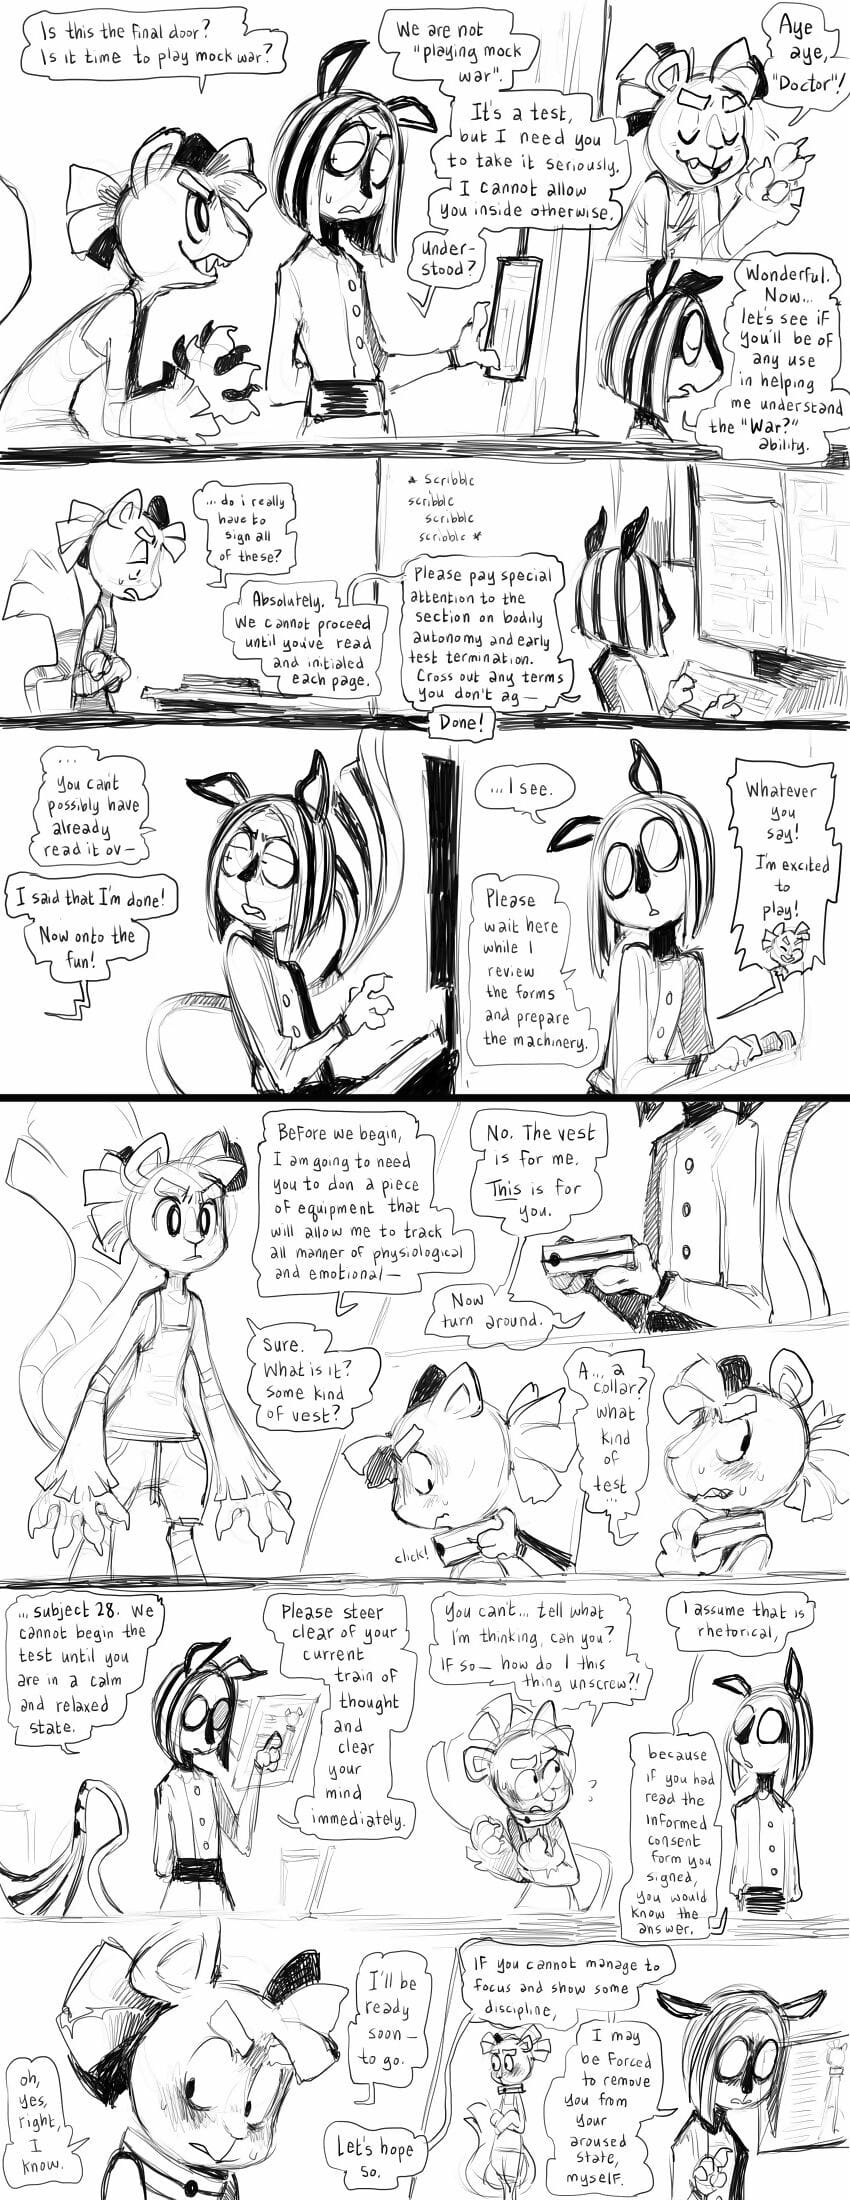 miscelánea comics Parte 3 page 1